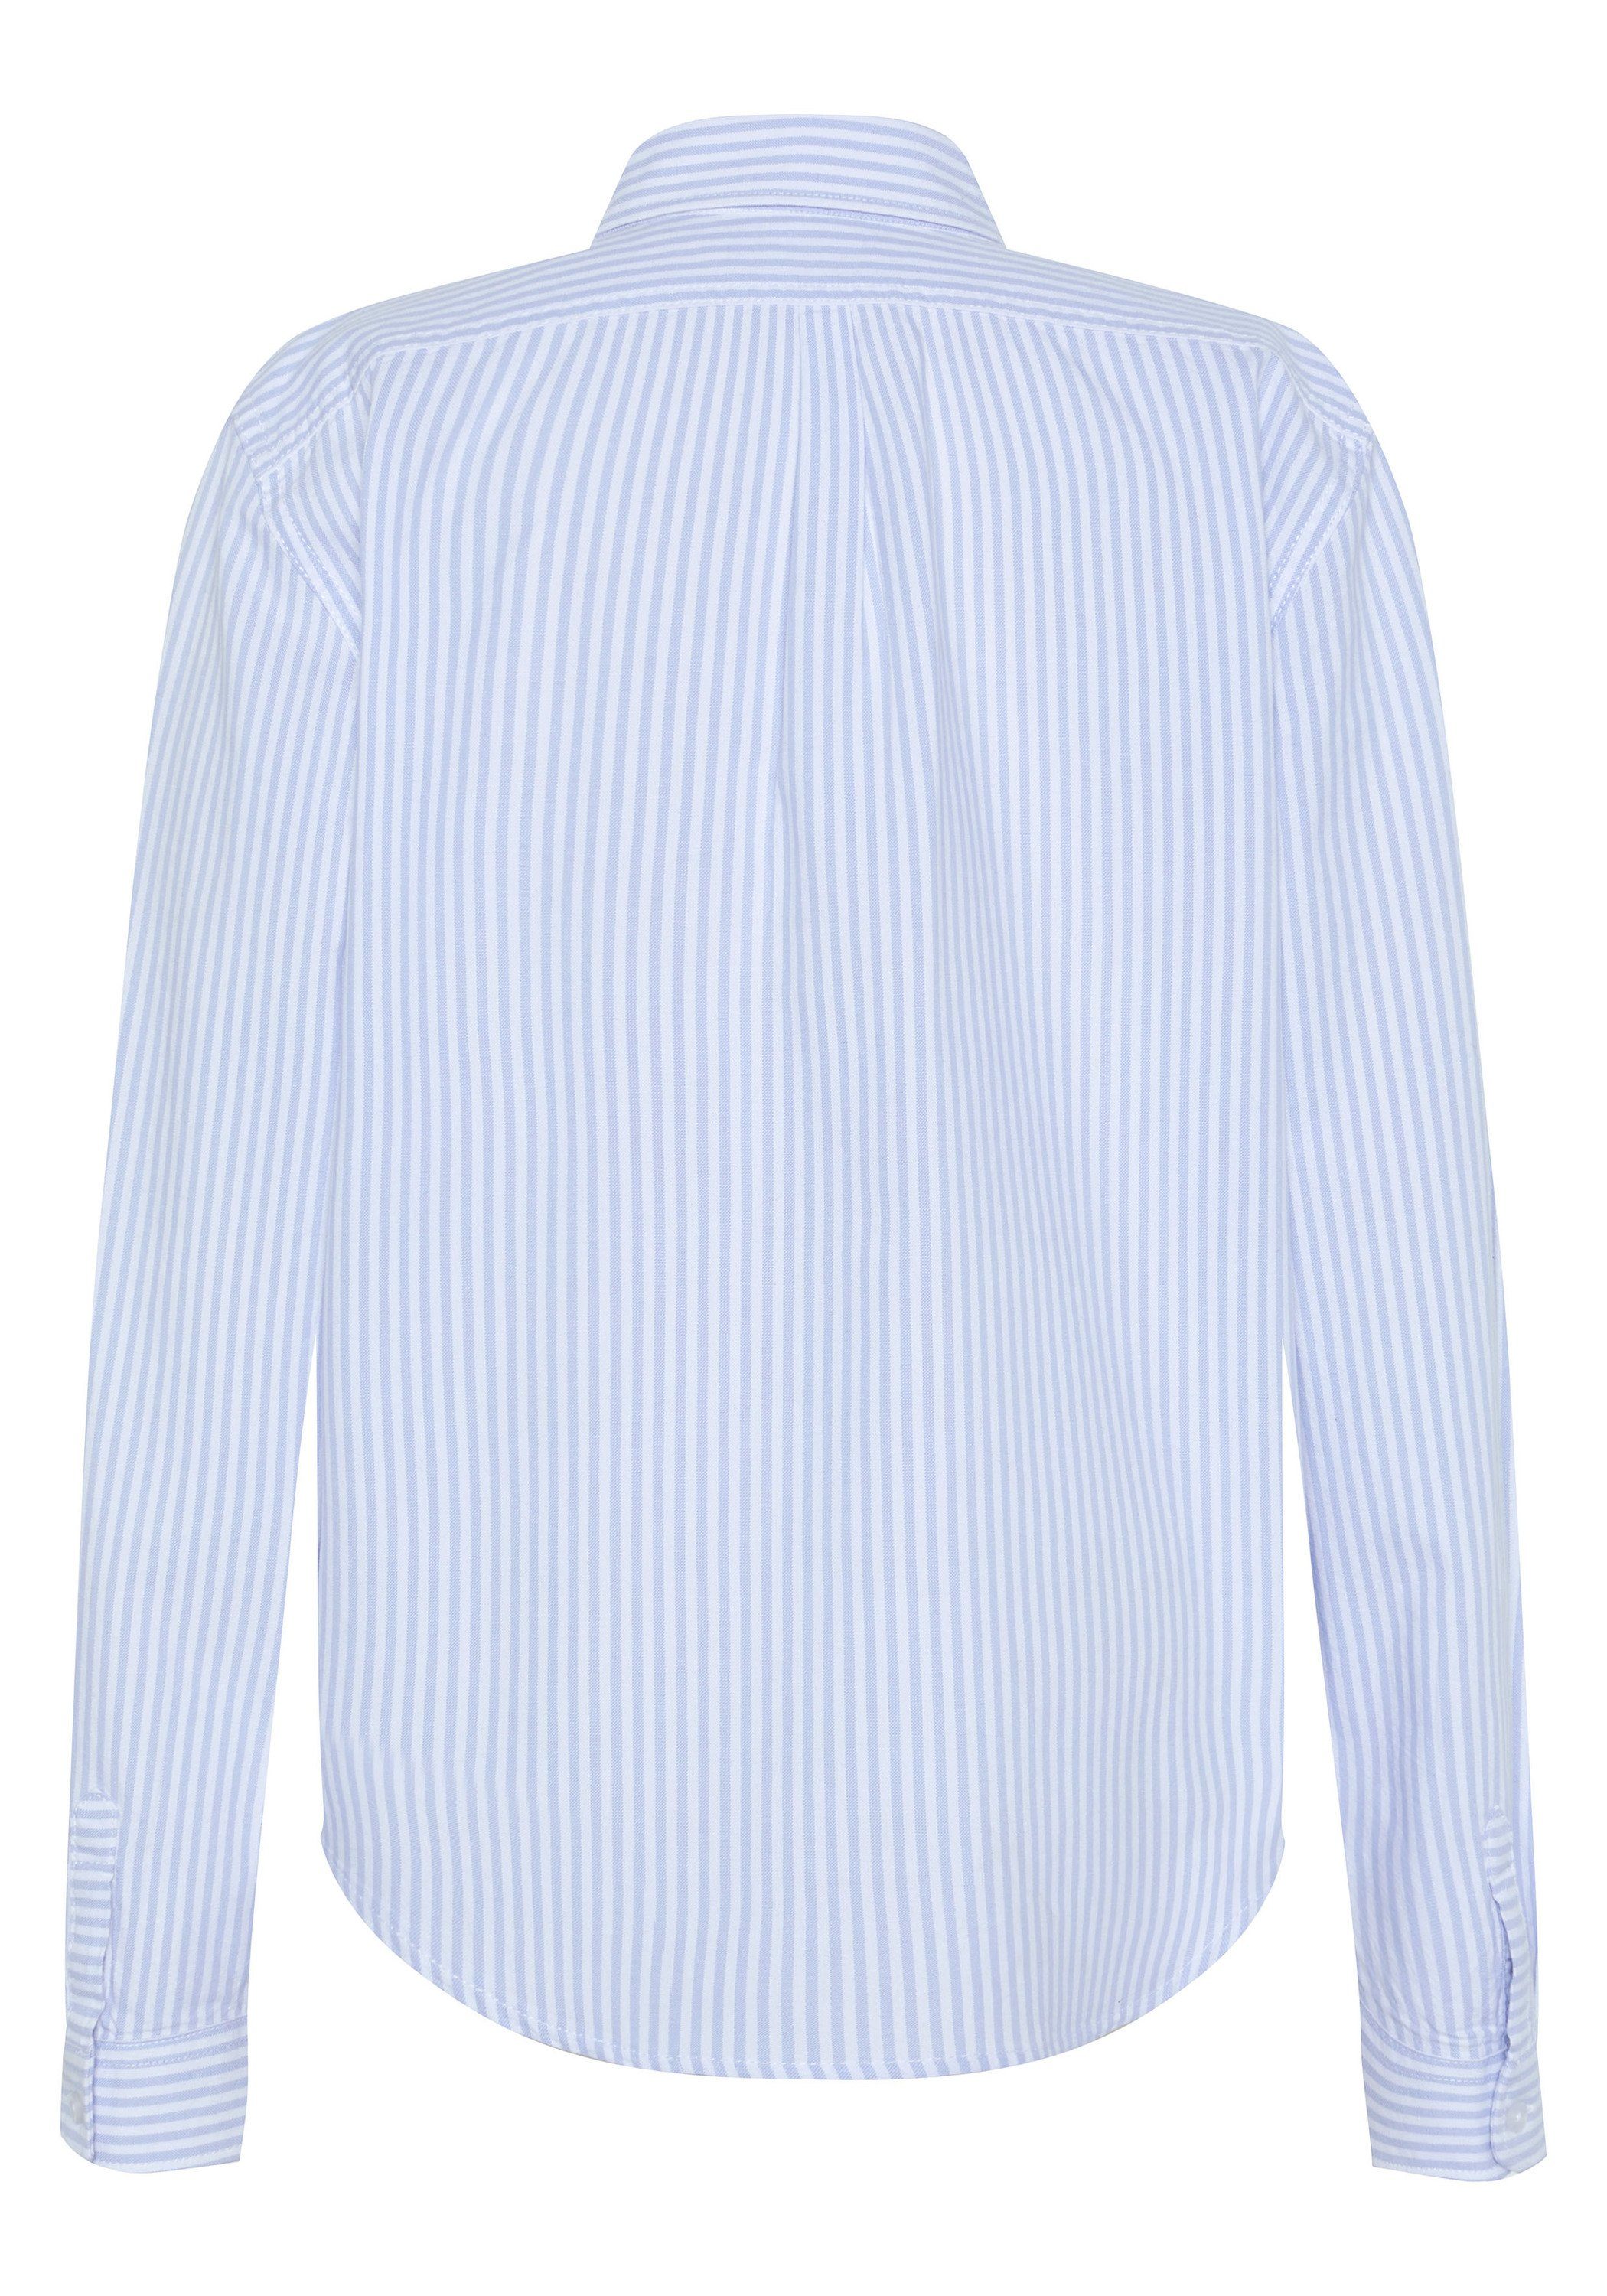 Polo Sylt Langarmhemd mit Streifen Light Blue/White 4010